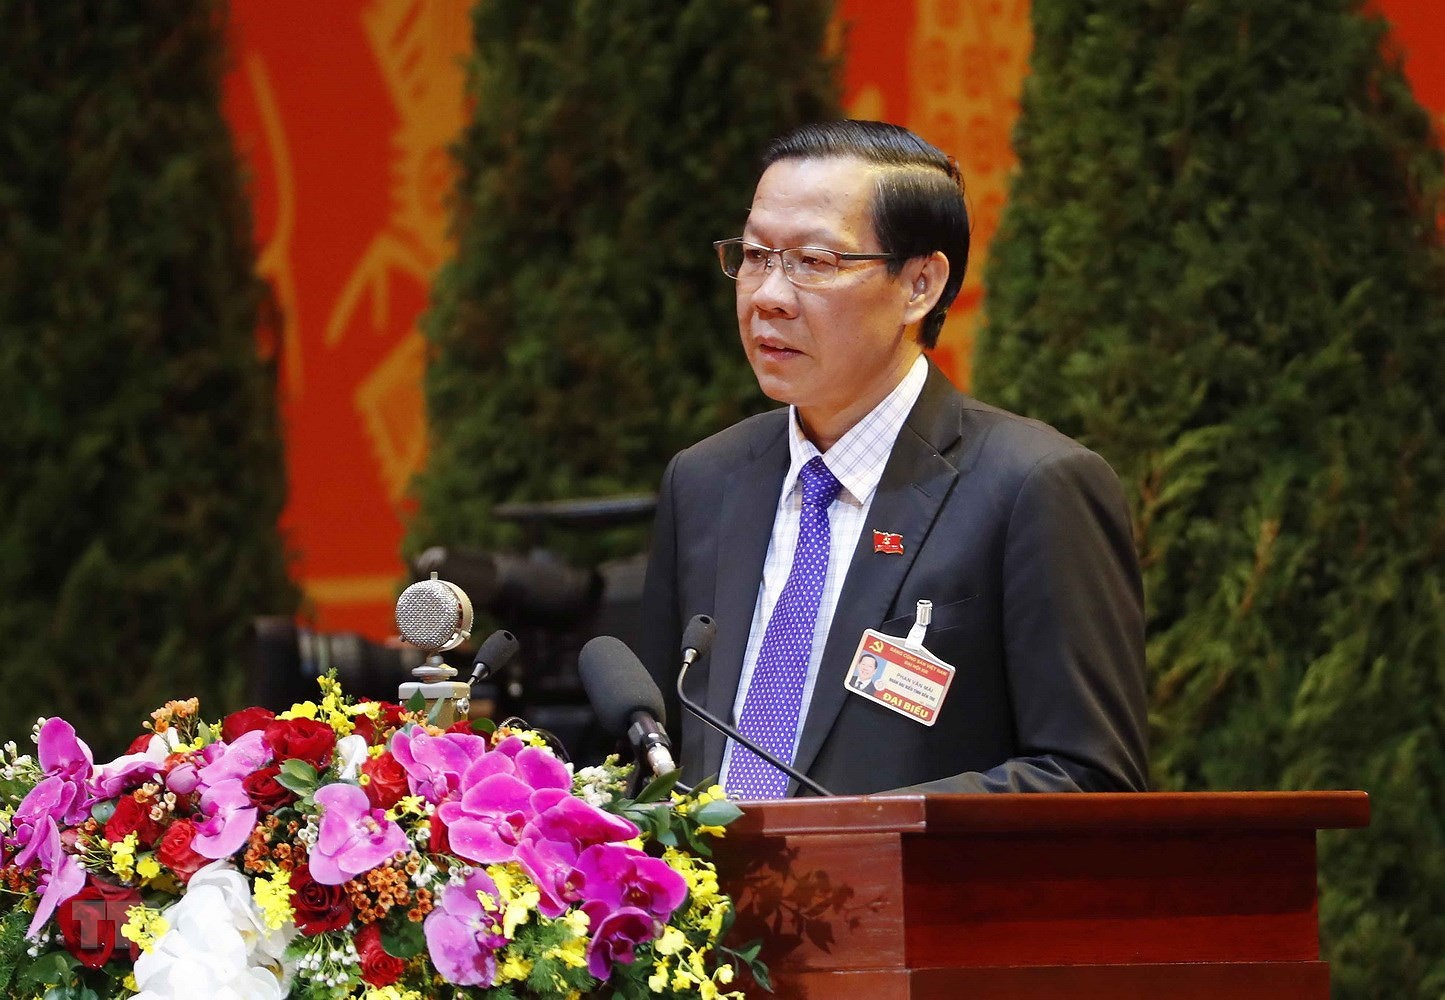 Đồng chí Phan Văn Mãi, Ủy viên Trung ương Đảng, Bí thư Tỉnh ủy Bến Tre trình bày tham luận. (Ảnh: TTXVN)